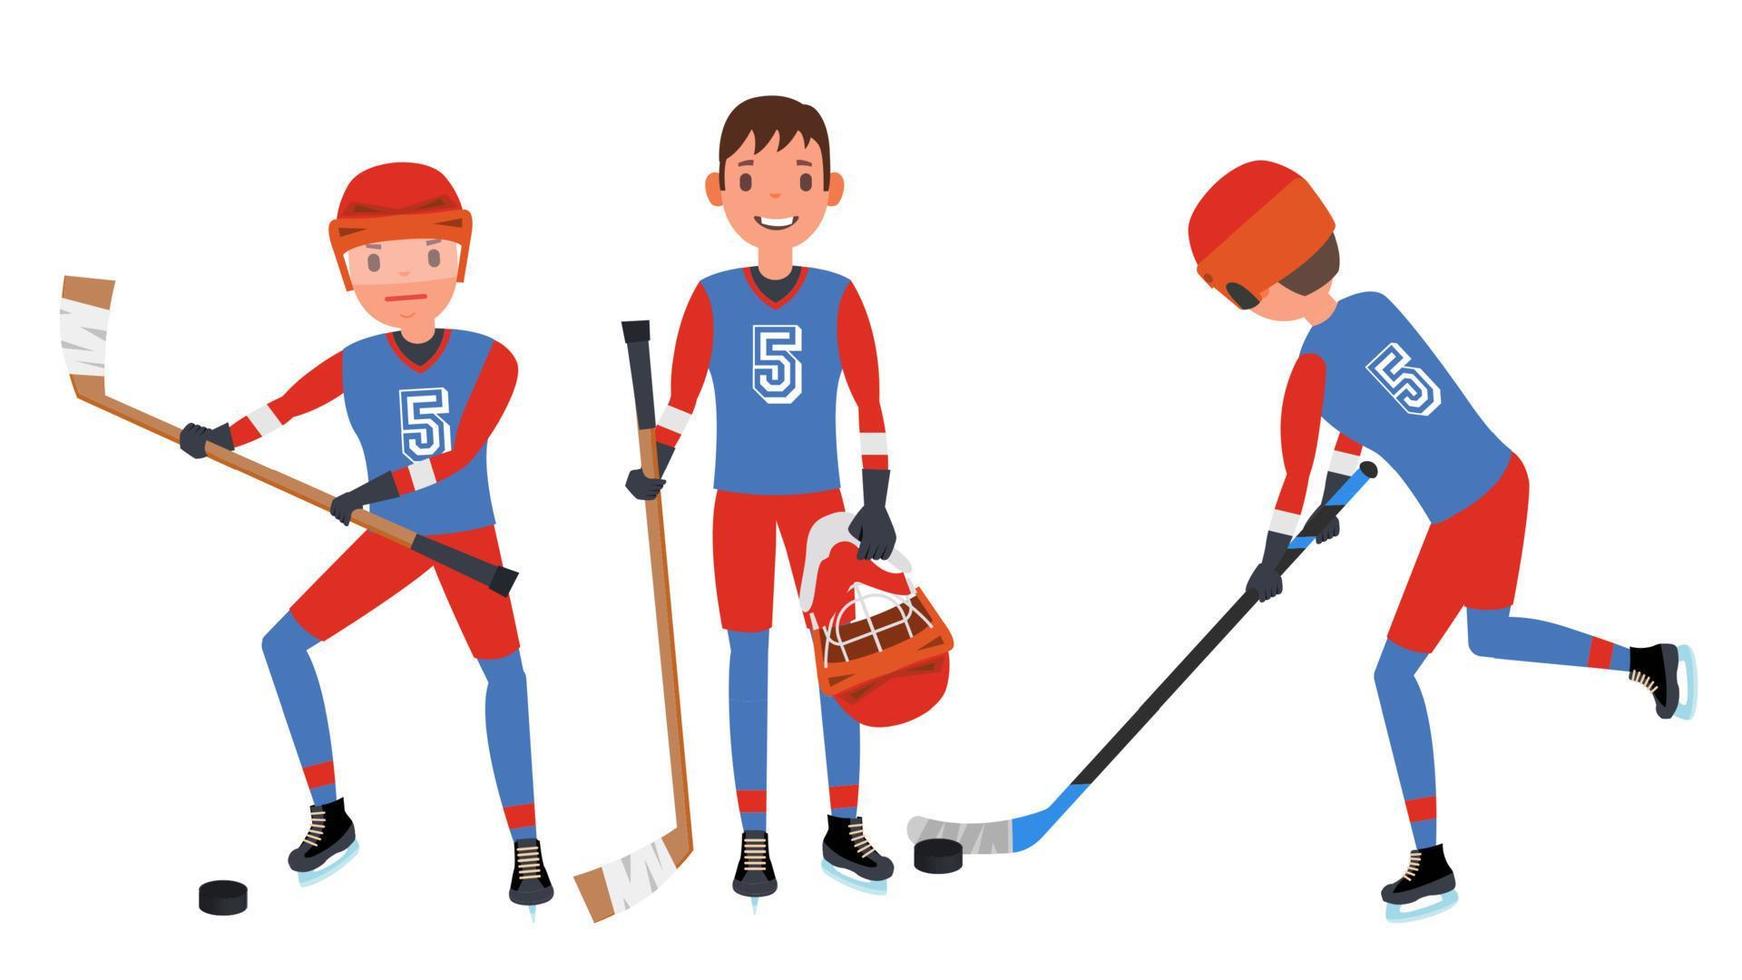 clásico vector de jugador de hockey sobre hielo. colocar. concepto de juego de competición. aislado en blanco ilustración de personaje de dibujos animados